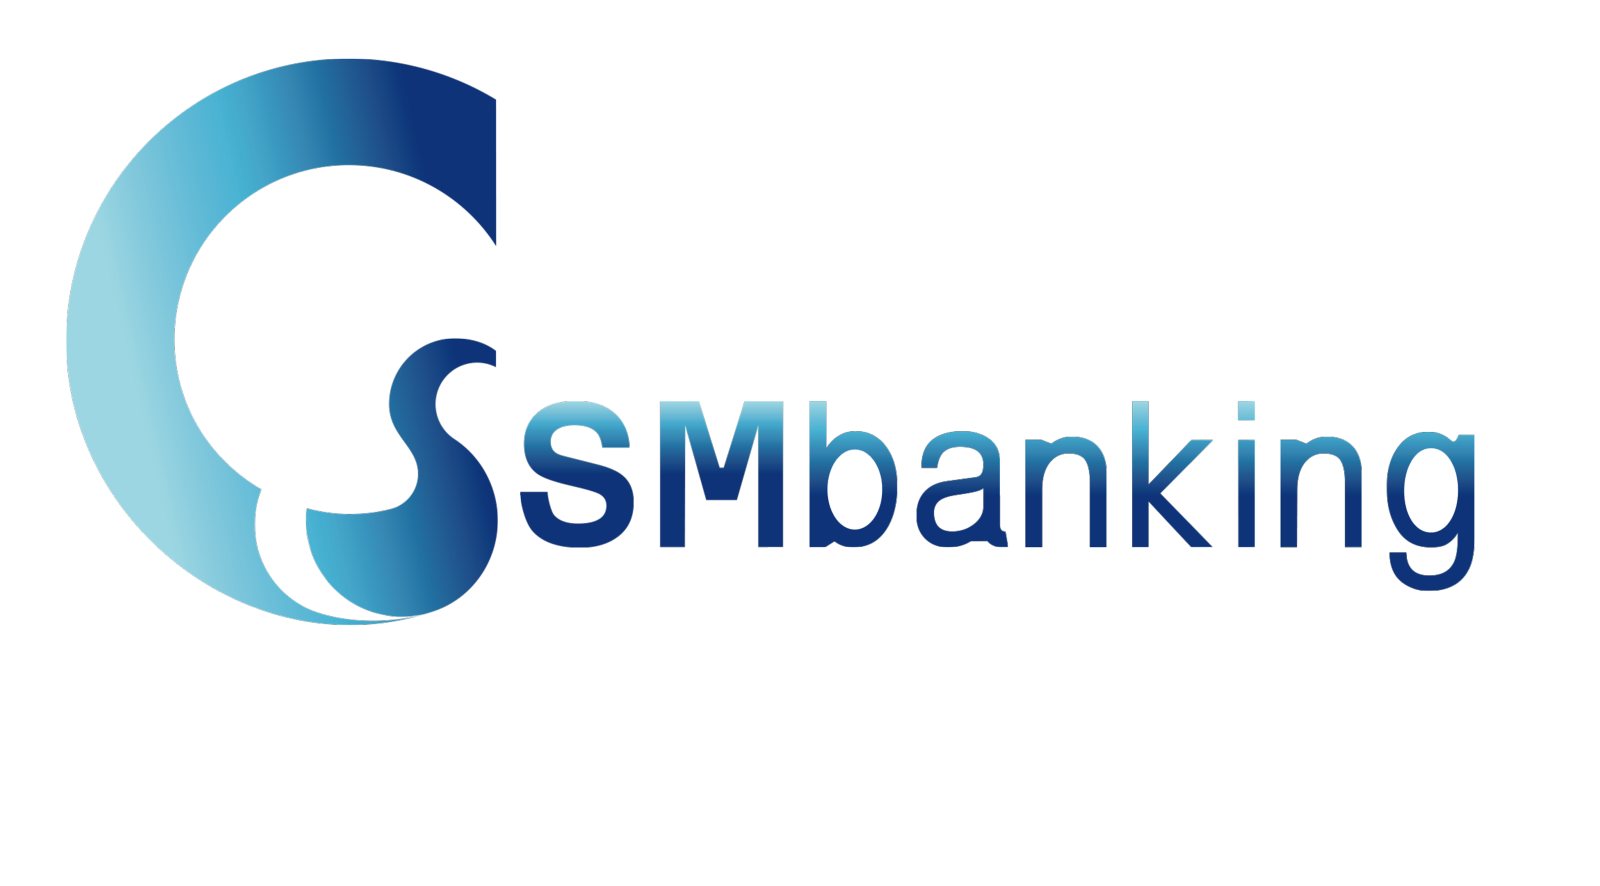 Guangzhou GSM Banking Co Limited Logo